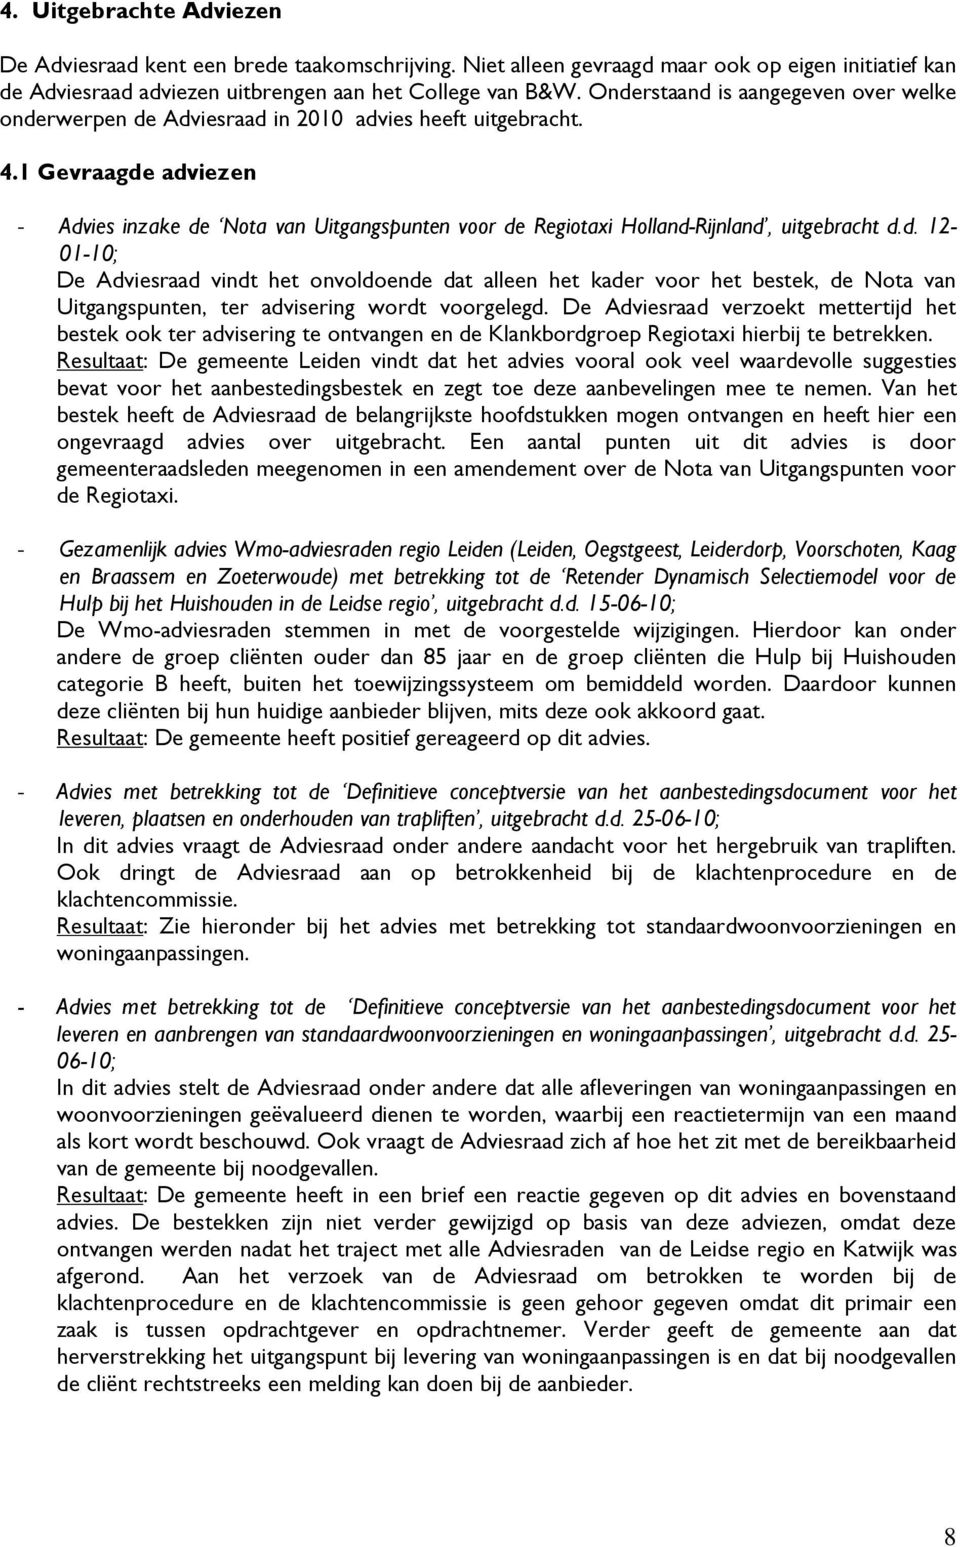 1 Gevraagde adviezen - Advies inzake de Nota van Uitgangspunten voor de Regiotaxi Holland-Rijnland, uitgebracht d.d. 12-01-10; De Adviesraad vindt het onvoldoende dat alleen het kader voor het bestek, de Nota van Uitgangspunten, ter advisering wordt voorgelegd.